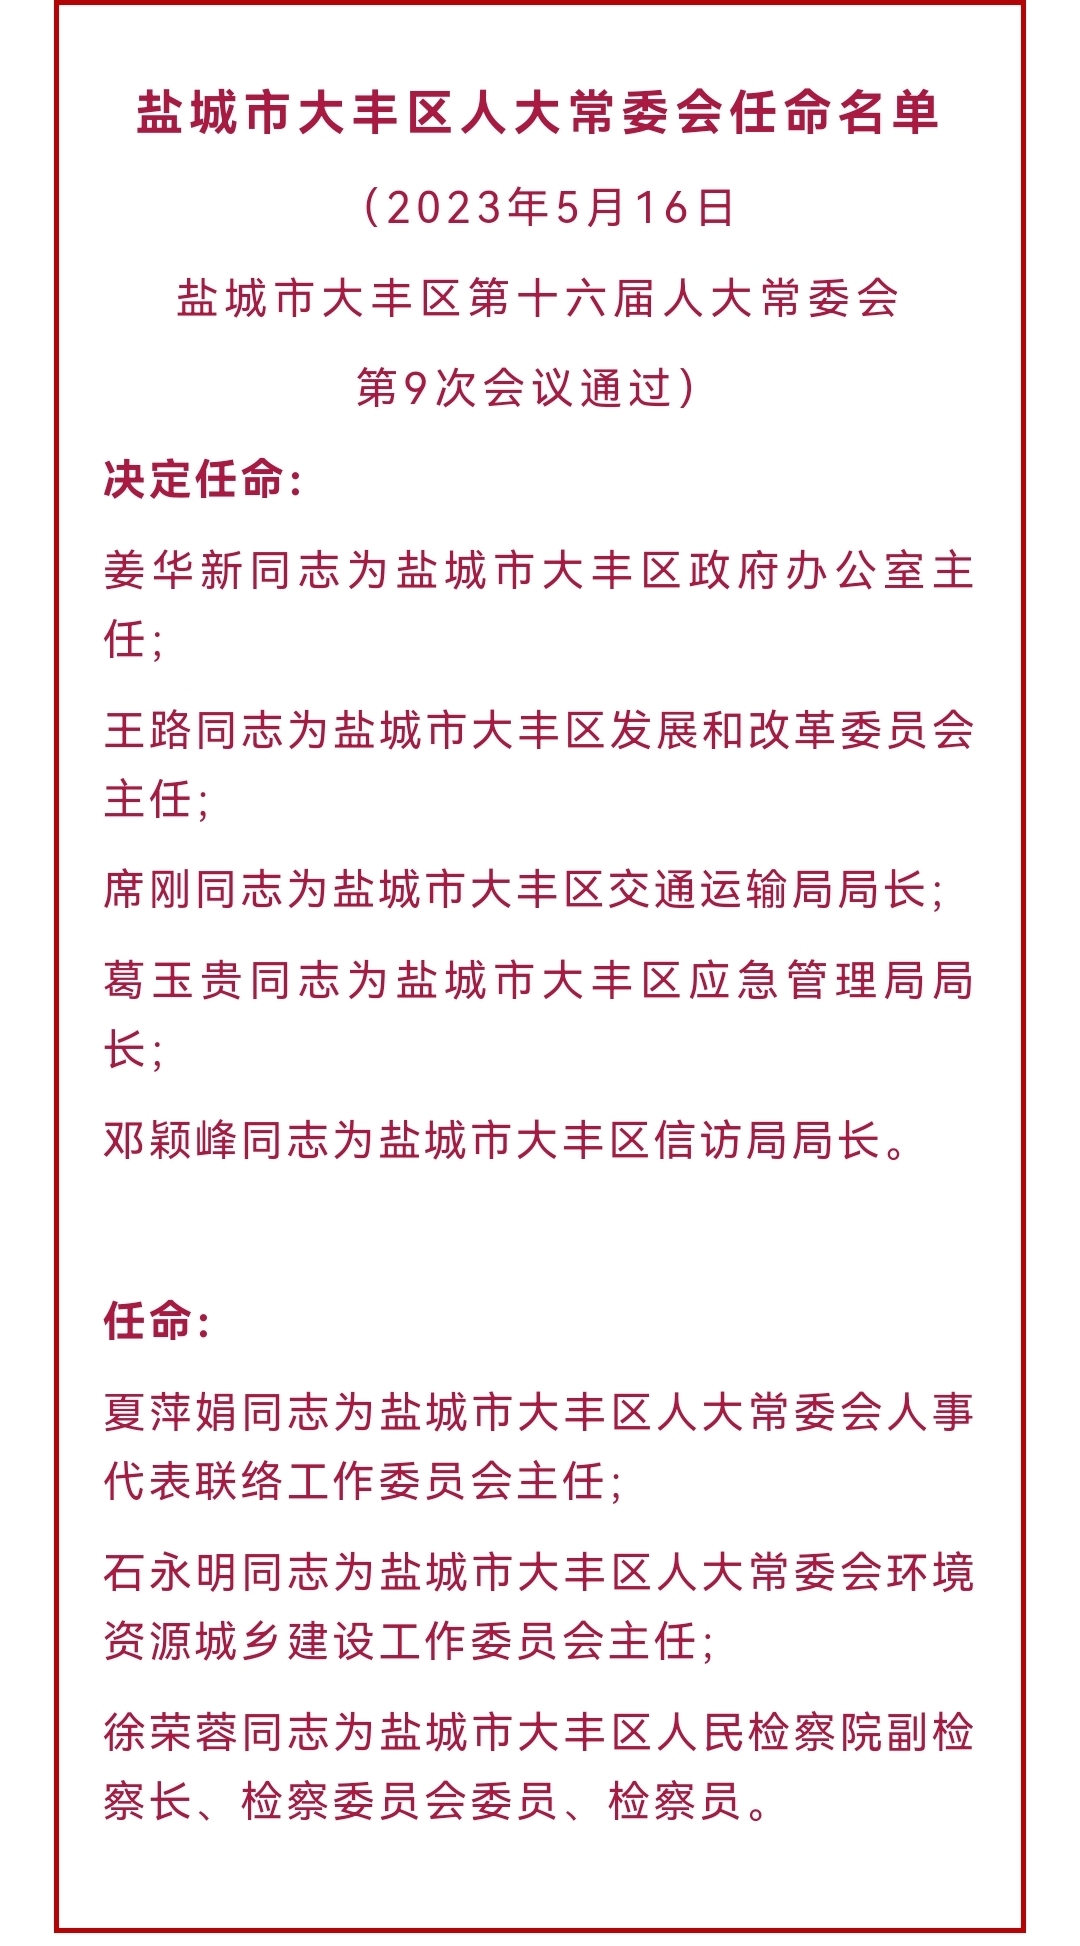 共青团湖南汽车工程职业学院第十八届干部任命大会